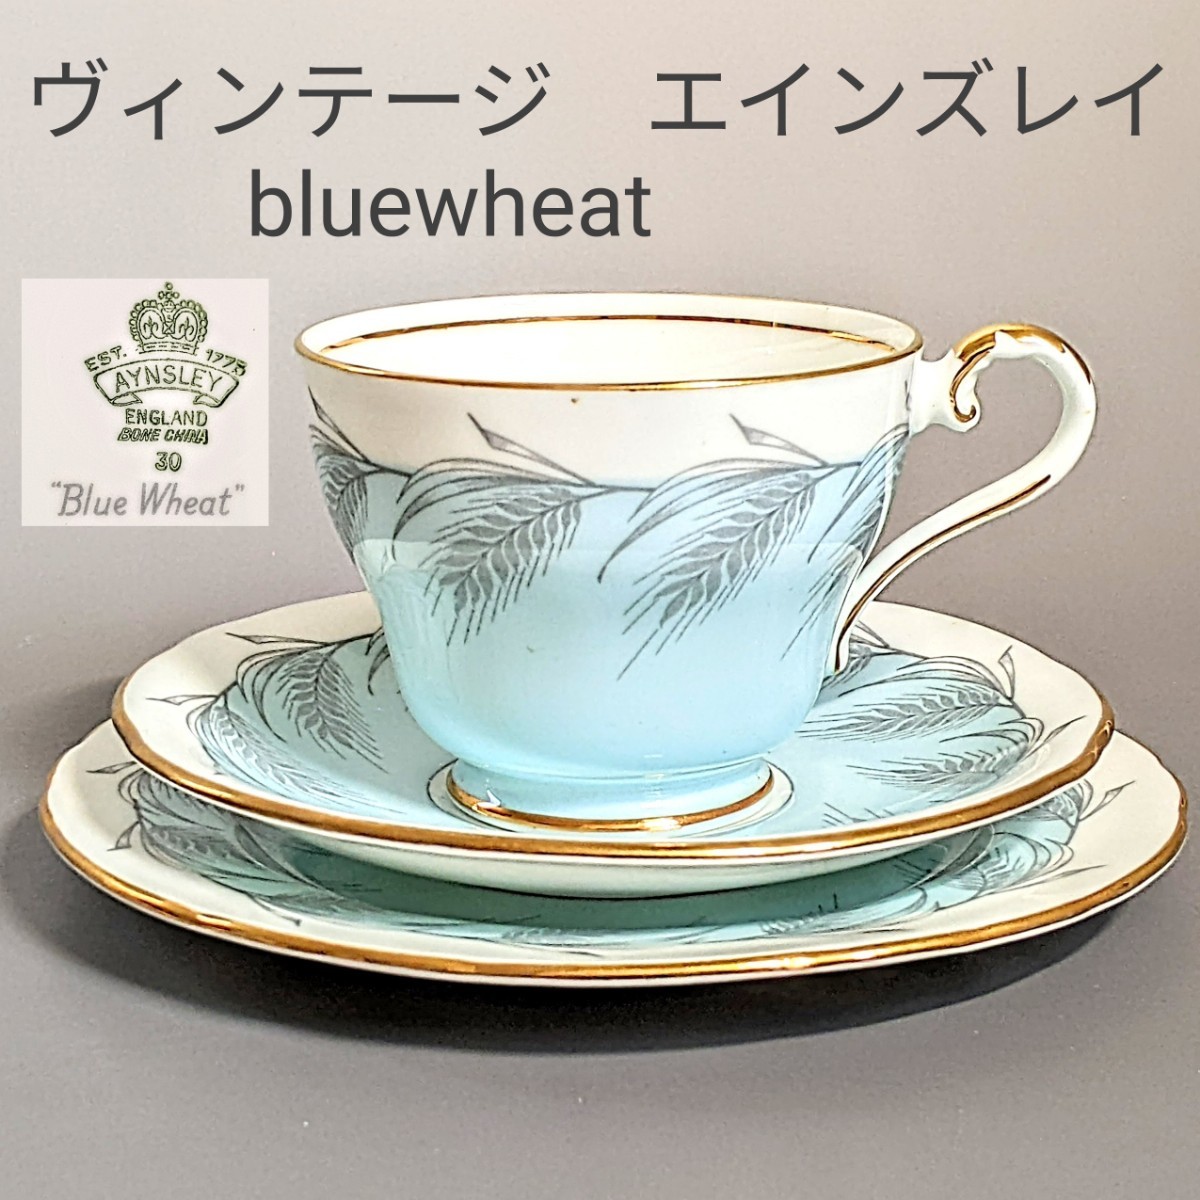 ヴィンテージ エインズレイ カップ&ソーサー キャビネットトリオ bluewheat 金彩 水色 麦柄 1930年代 イギリス